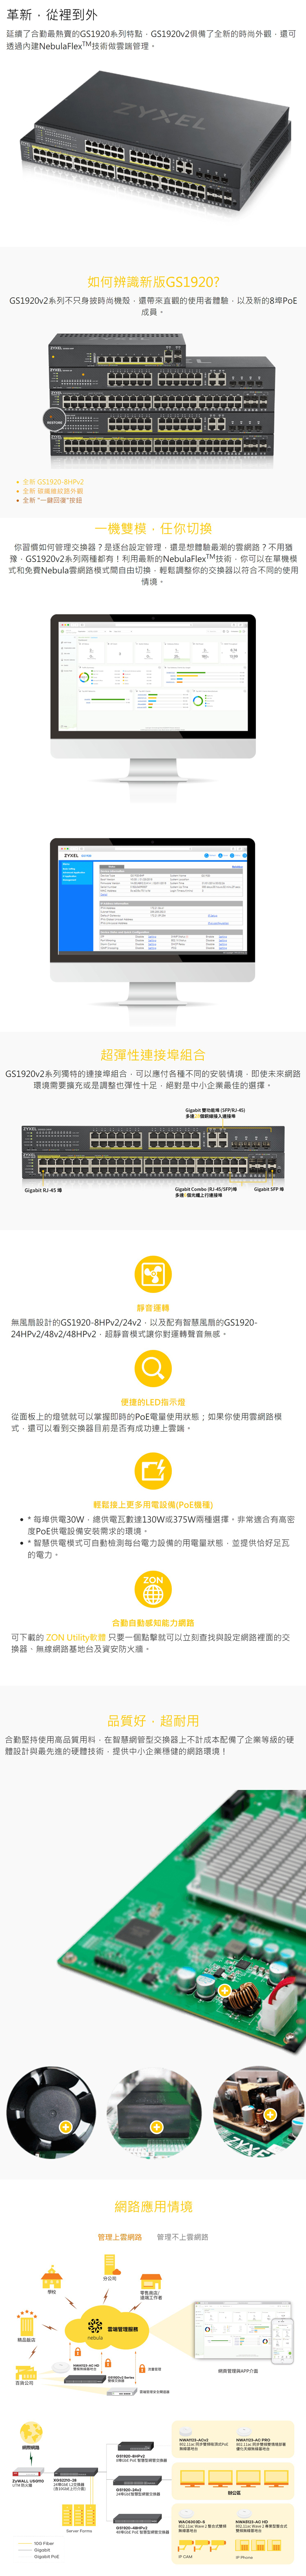 【35年連鎖老店】ZyXEL GS1920-48 v2 智慧型網管 網路交換器有發票/3年保固